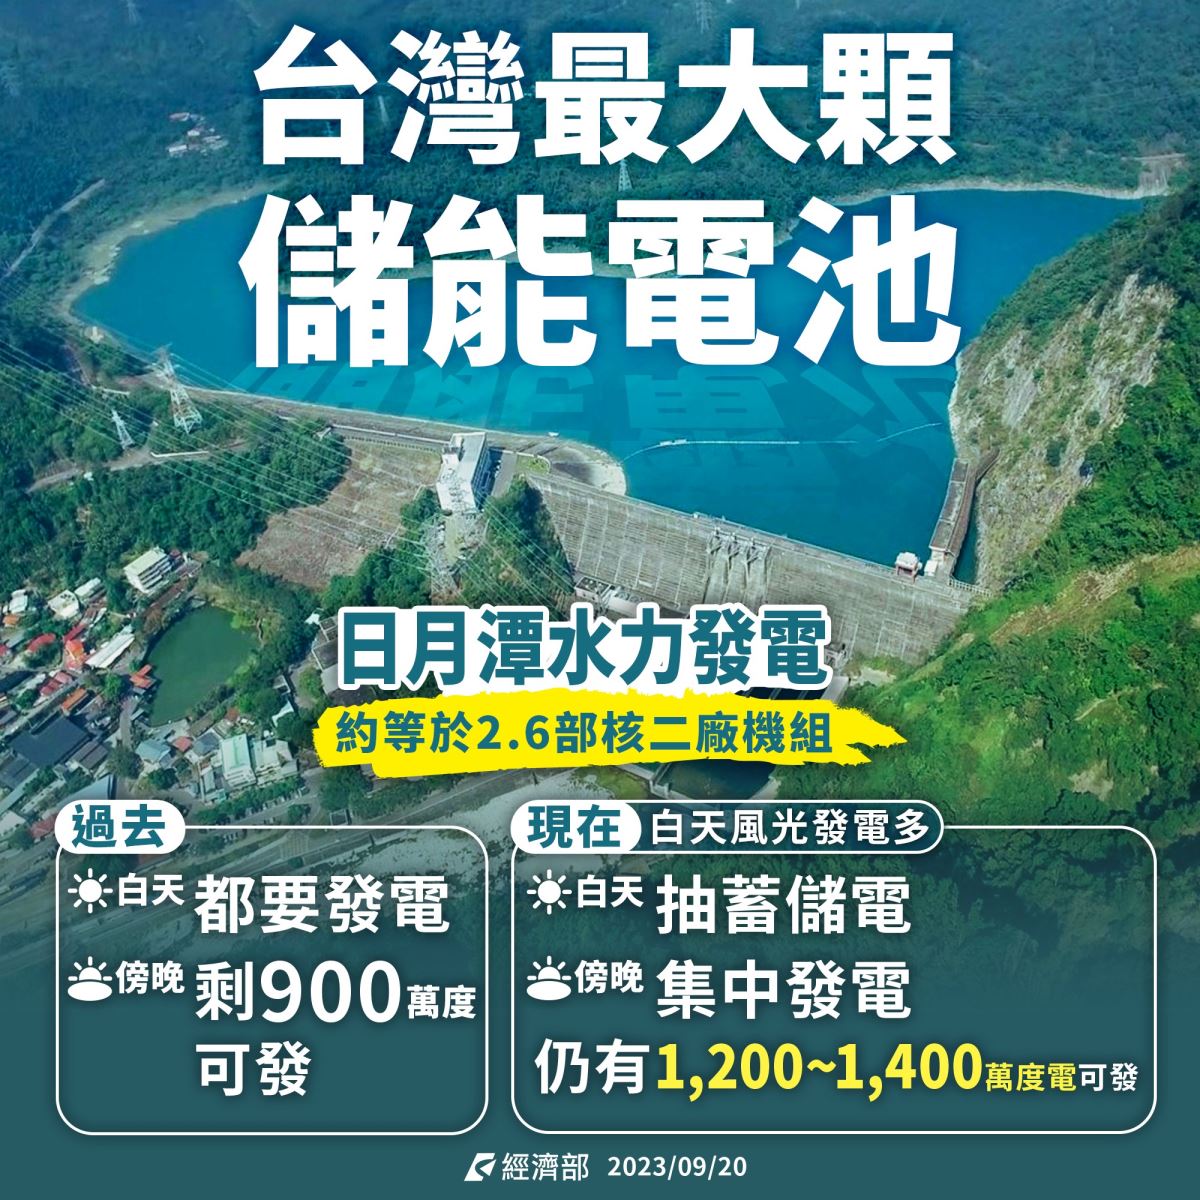 台灣最大顆儲能電池 日月潭水力發電